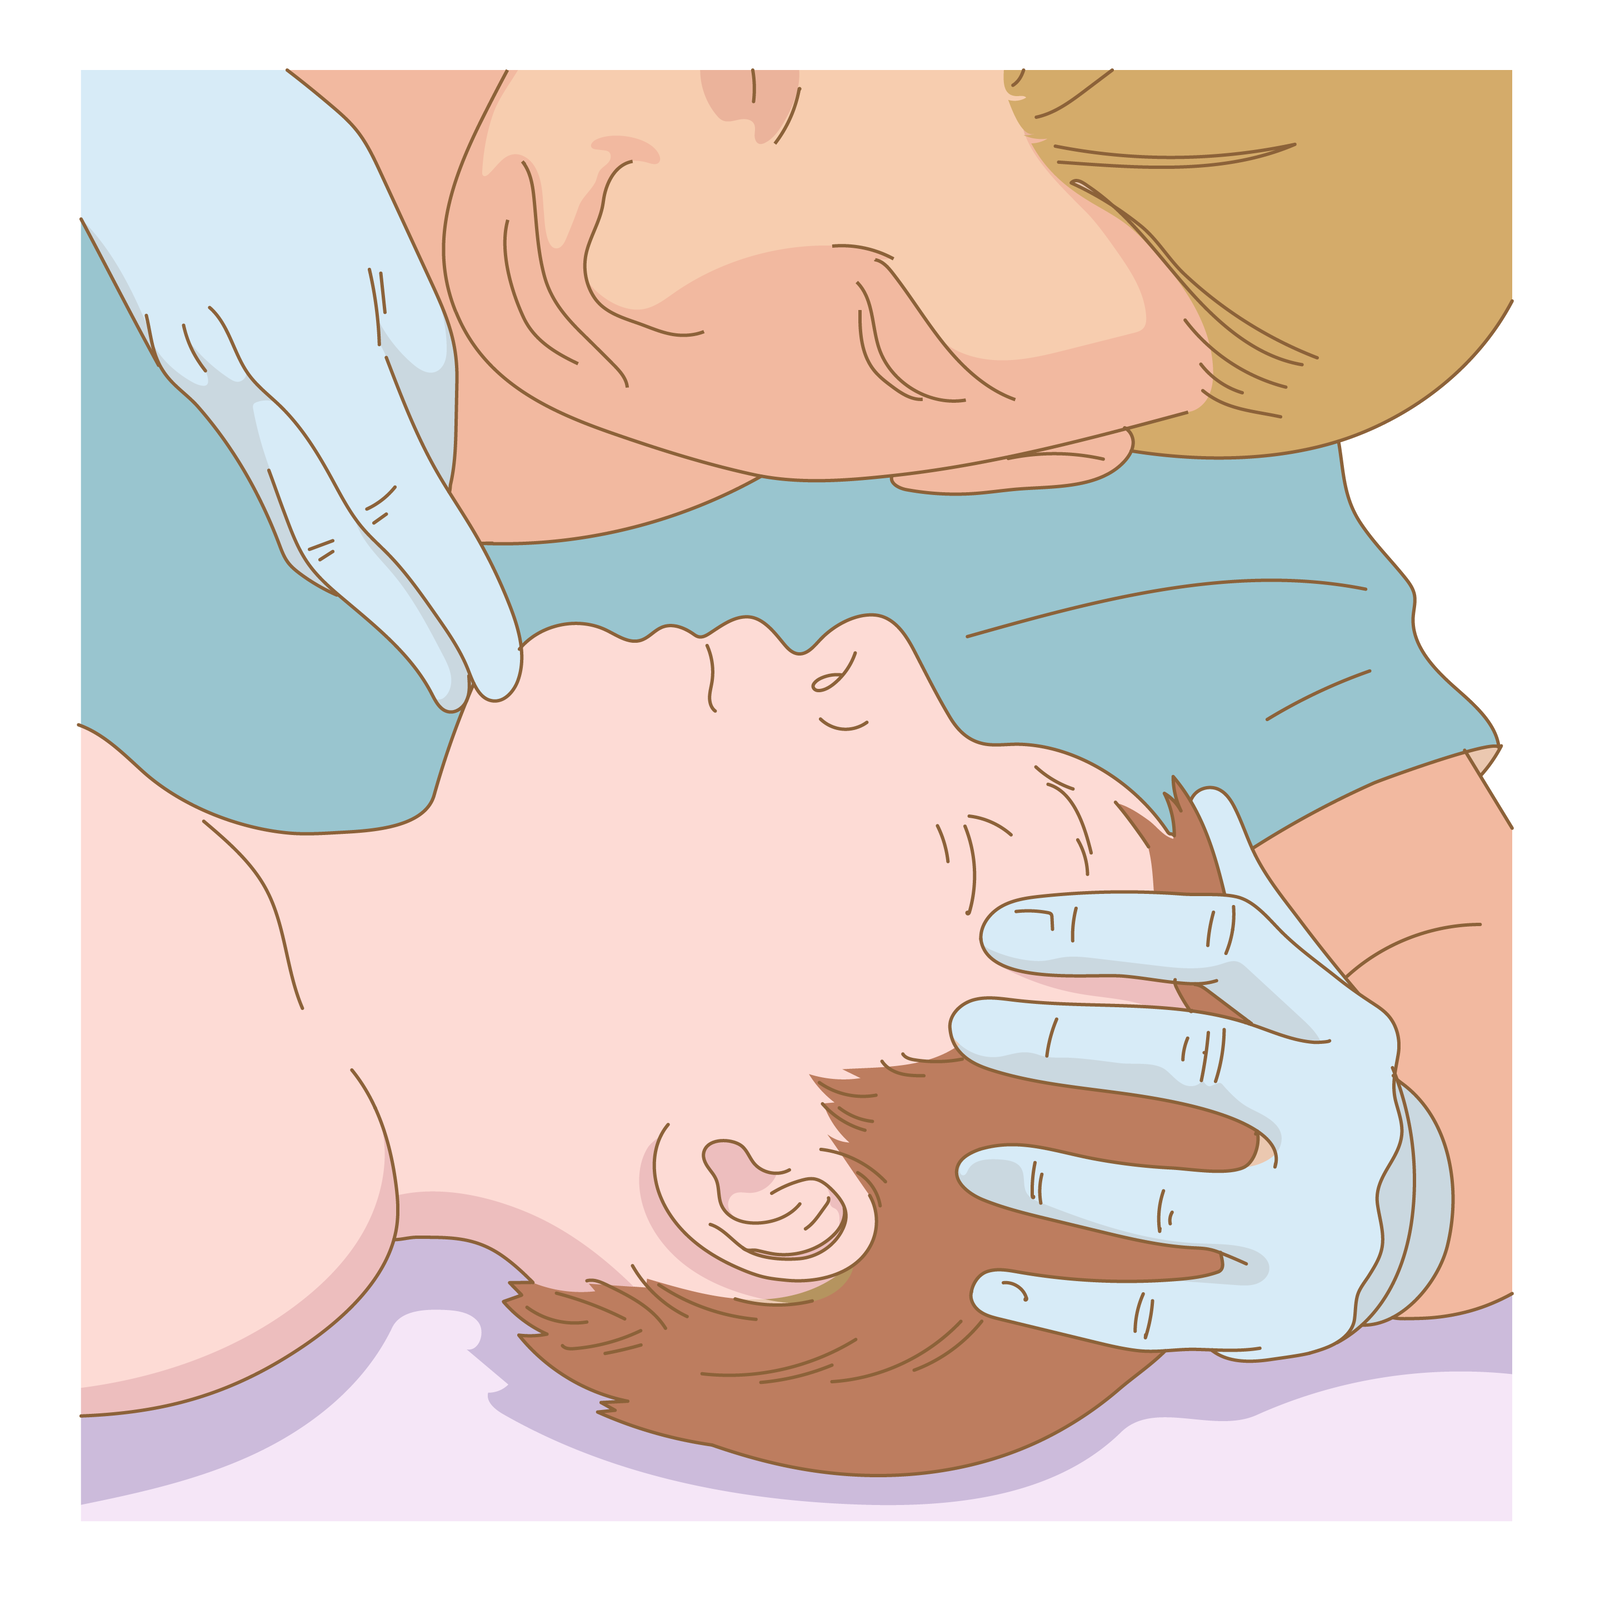 Ilustracja przedstawia głowę dziecka odchyloną do tyłu. Sanitariusz przytrzymuje jedną ręką głowę dziecka. Dwoma palcami drugiej ręki unosi brodę. Usta dziecka zamknięte. Głowa sanitariusza skierowana w stronę klatki piersiowej dziecka.